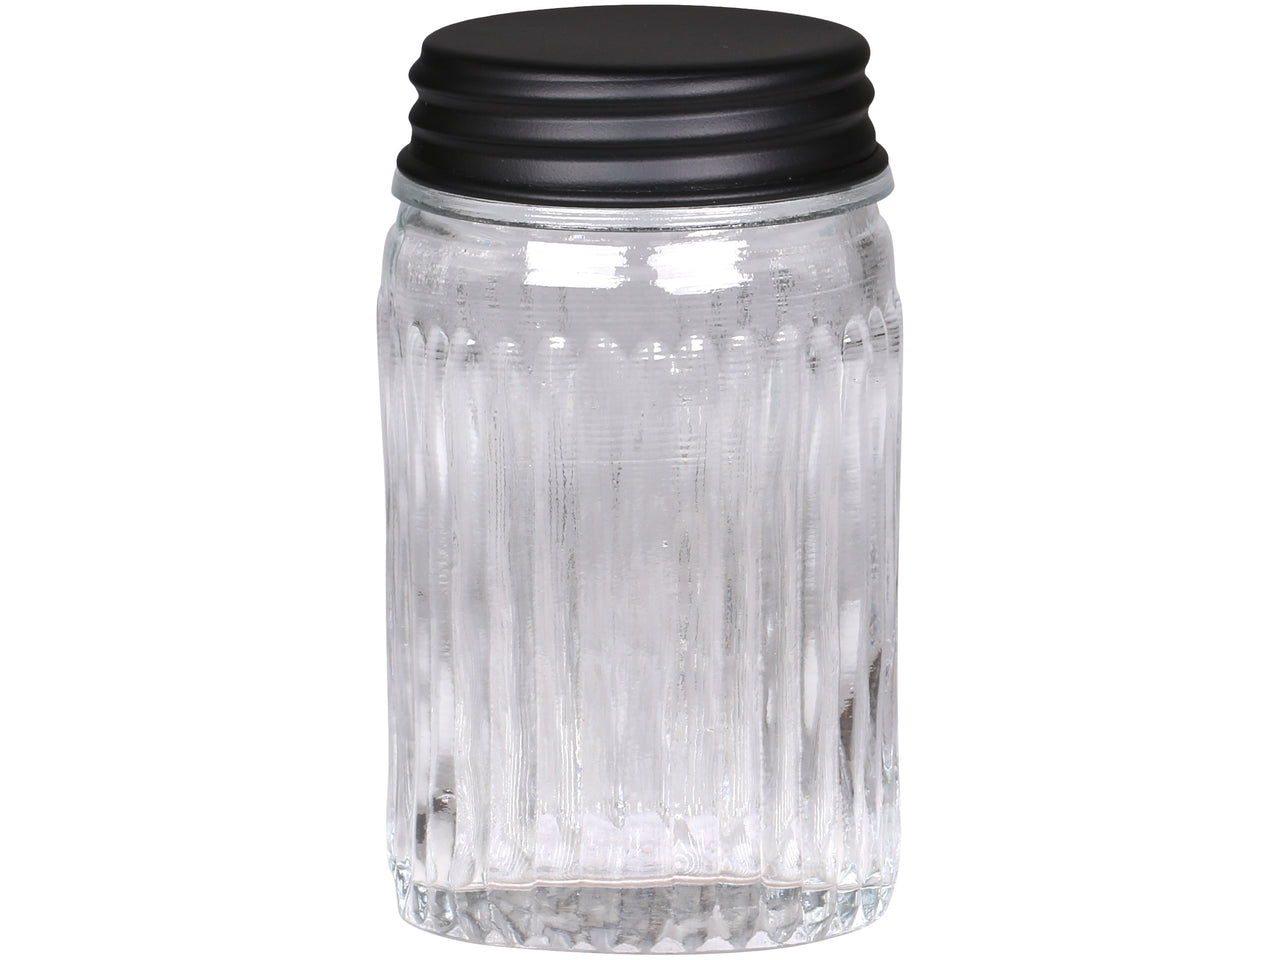 Storage Jar With Grooves & Black Lid